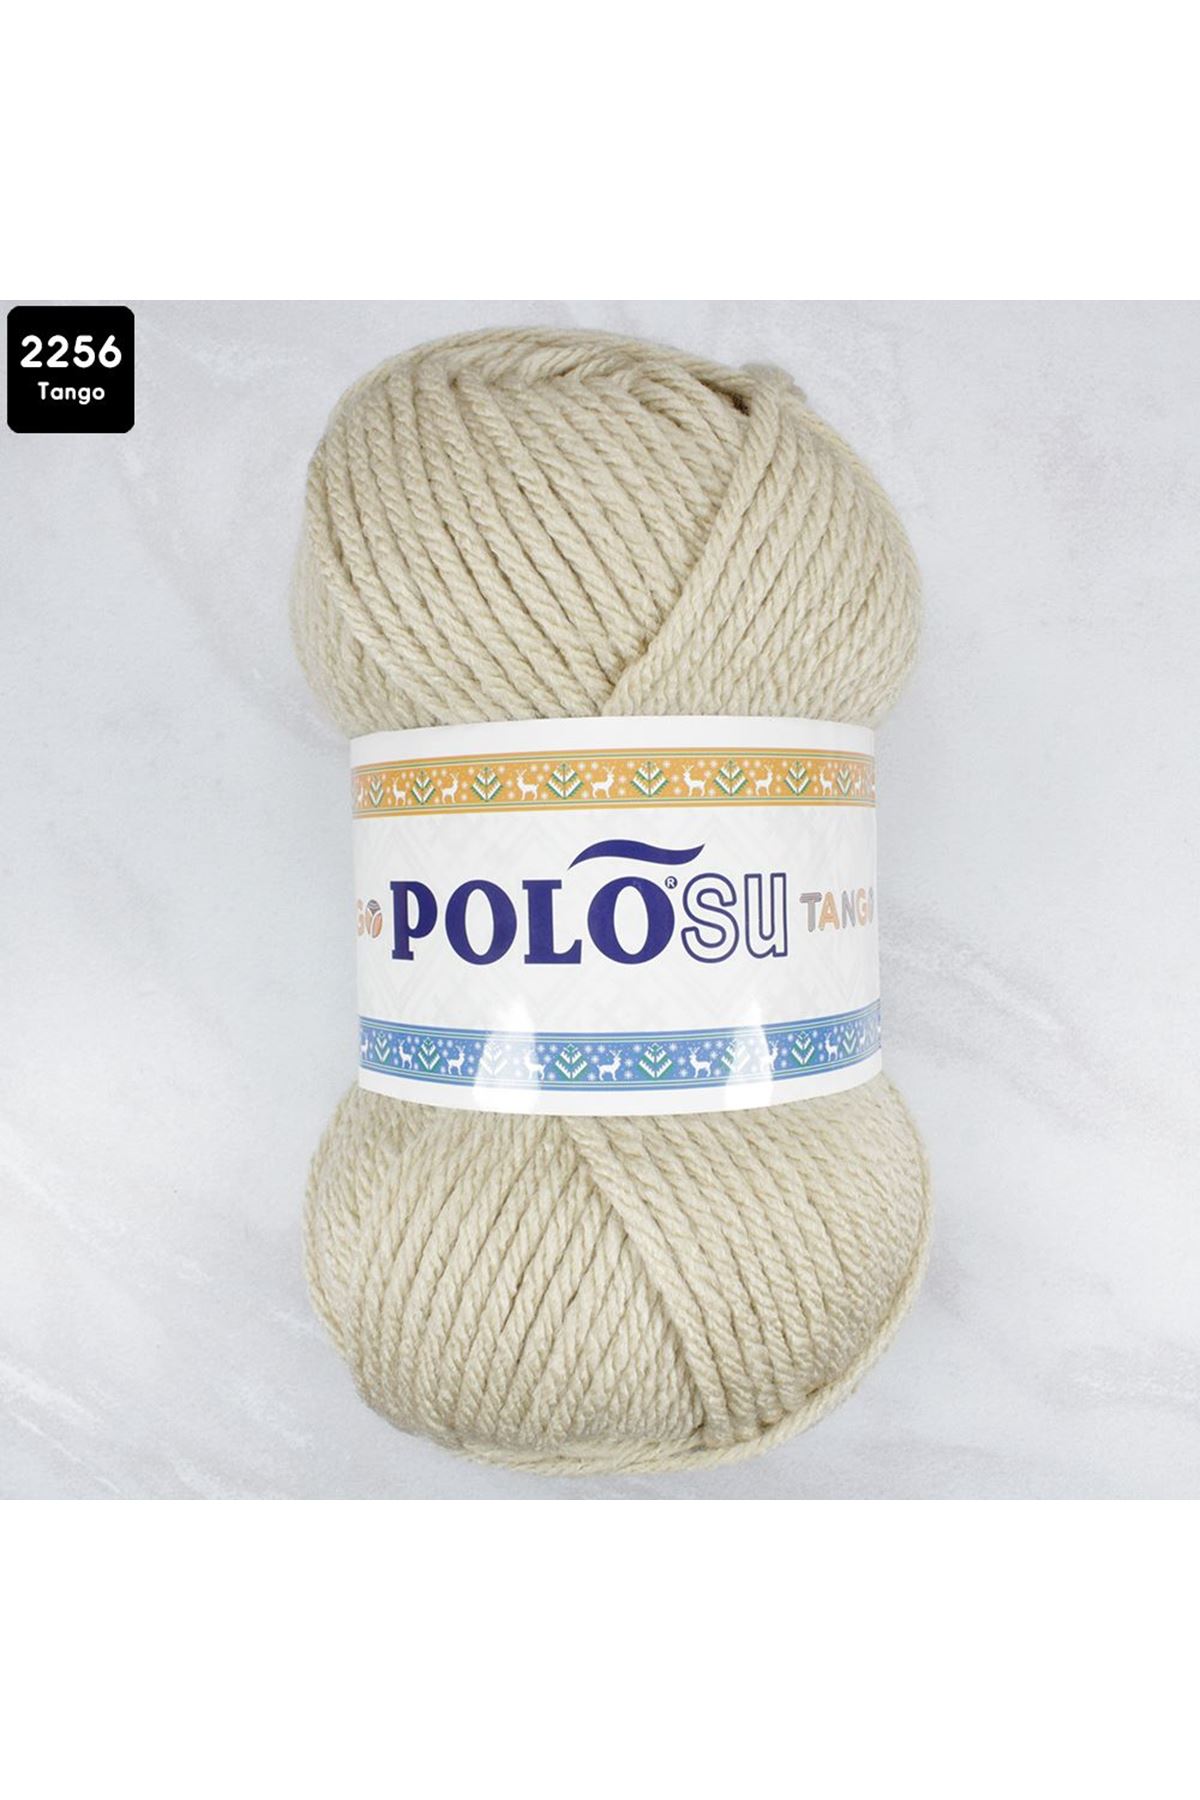 PoloSU Tango Renk No: 2256